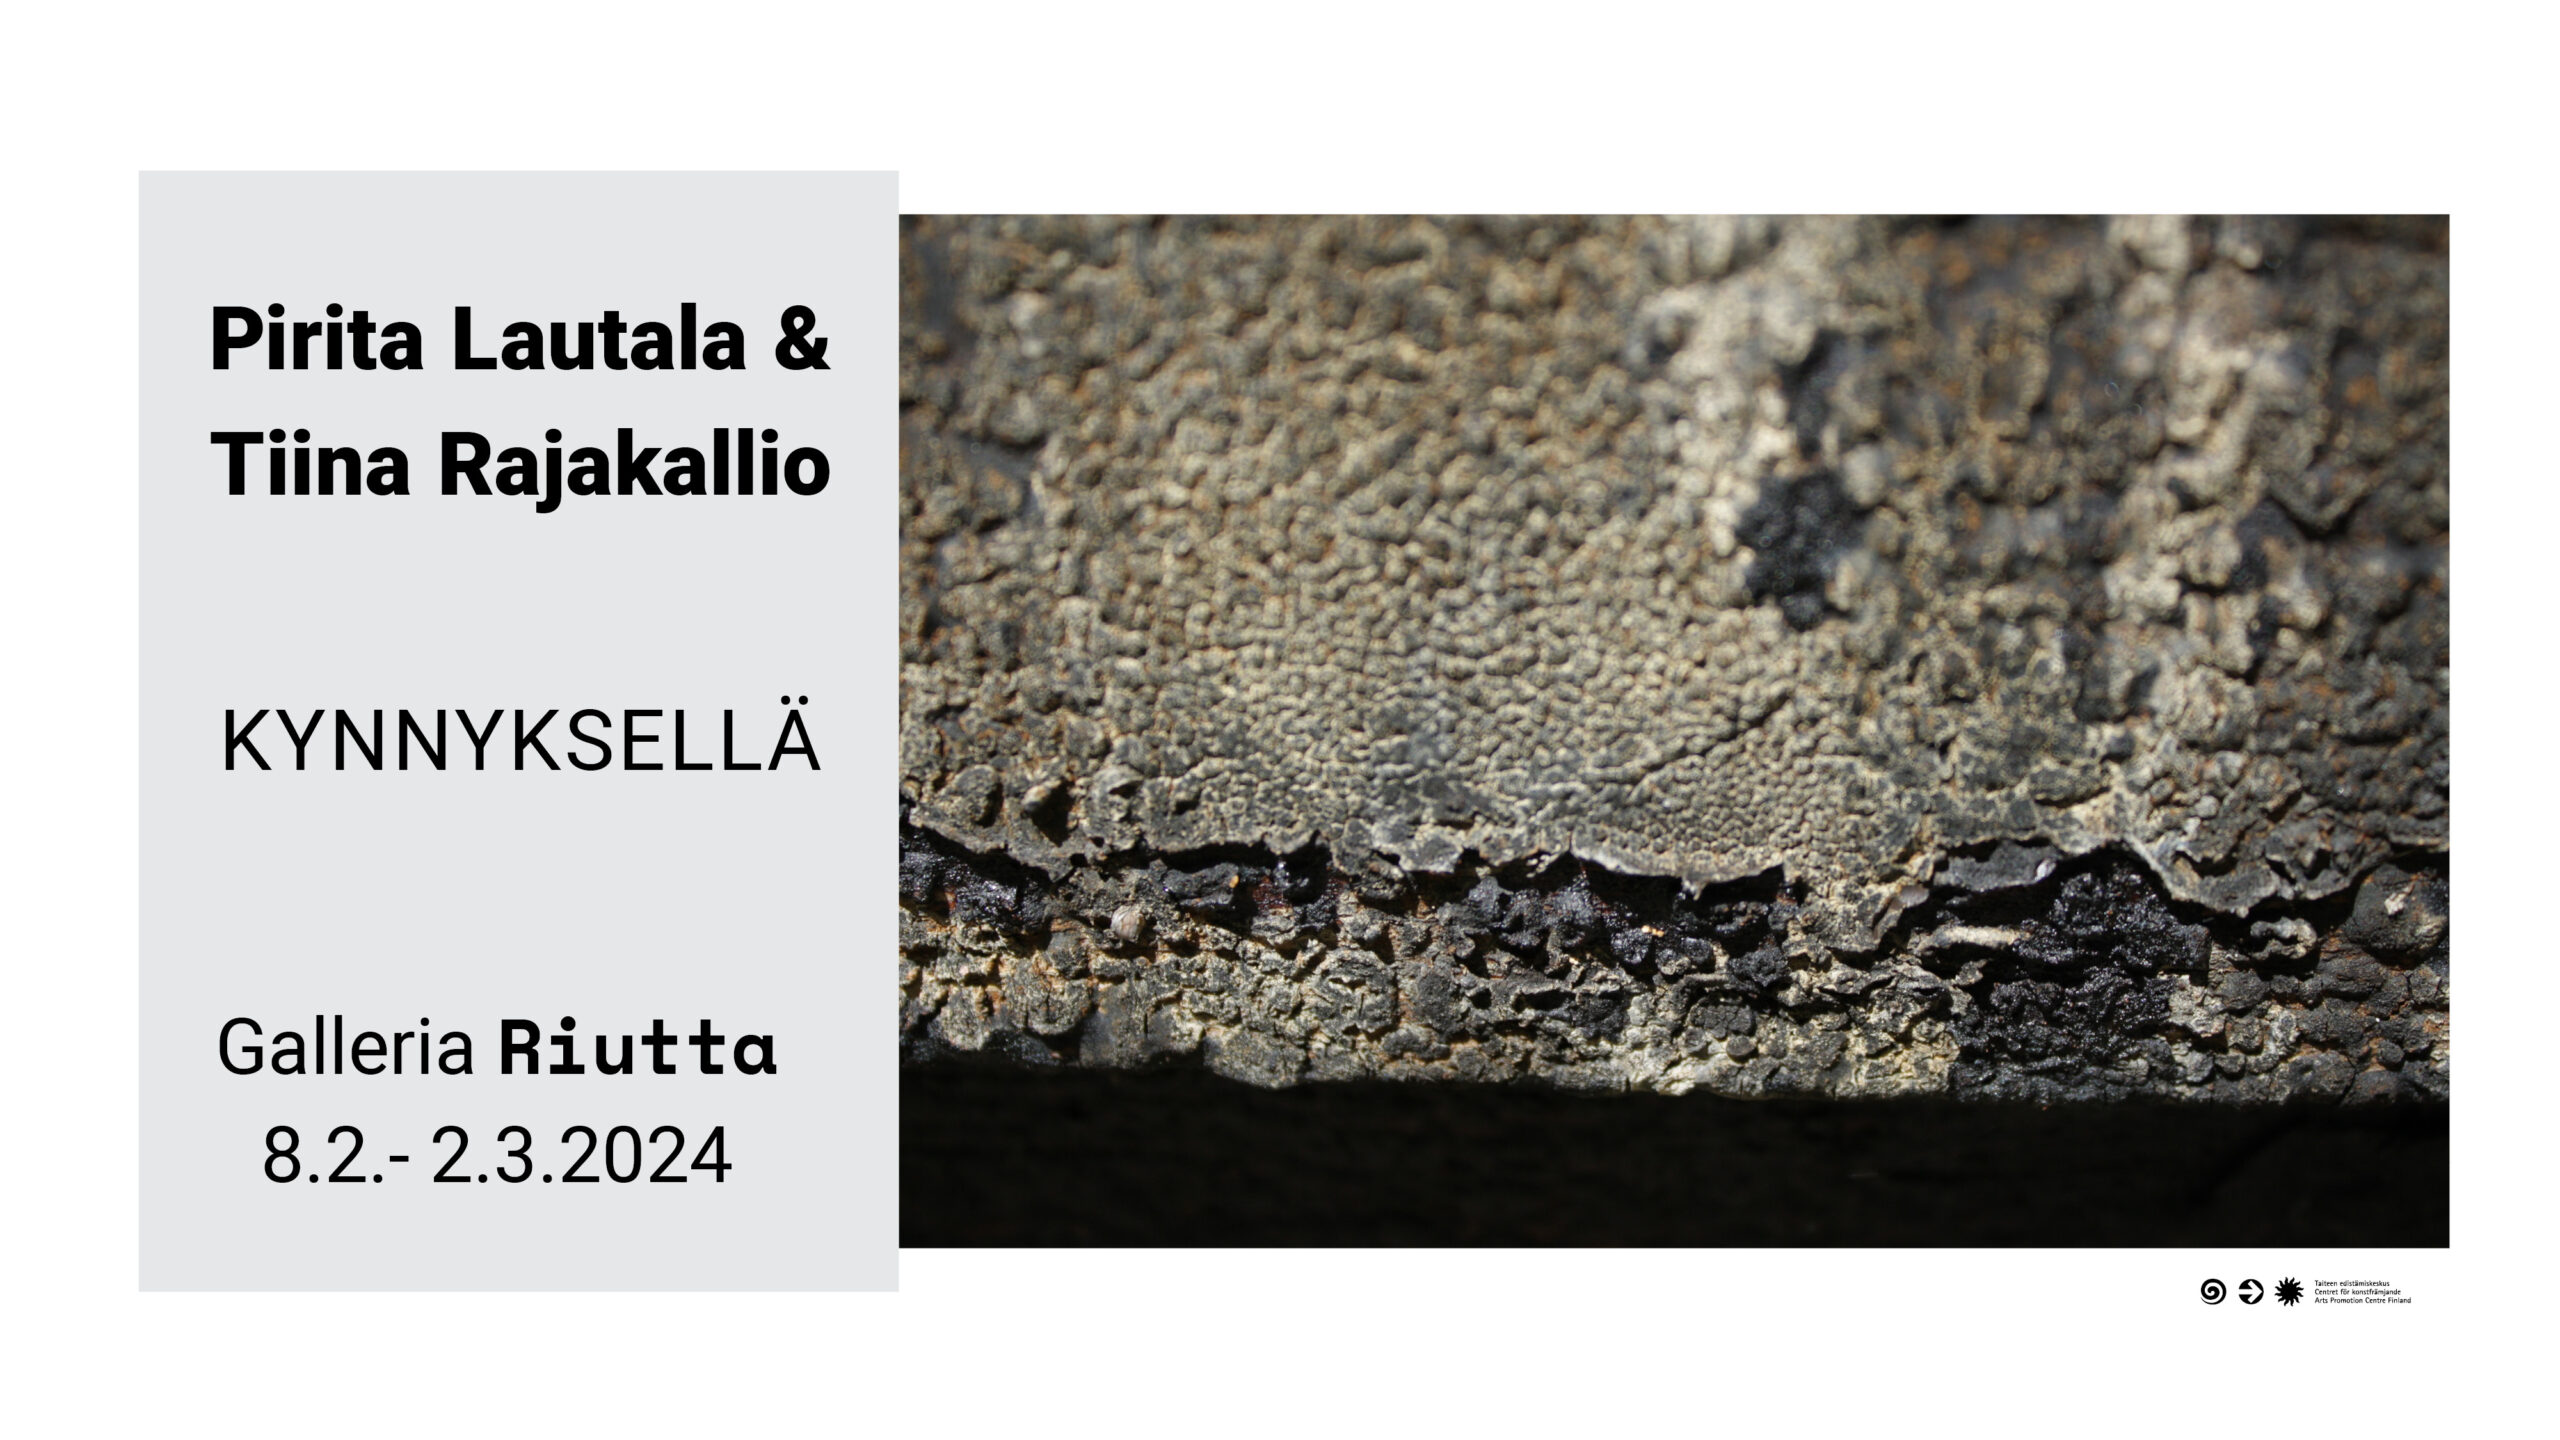 RIUTTA – Pirita Lautala & Tiina Rajakallio — Kynnyksellä 8.2.–2.3.2024